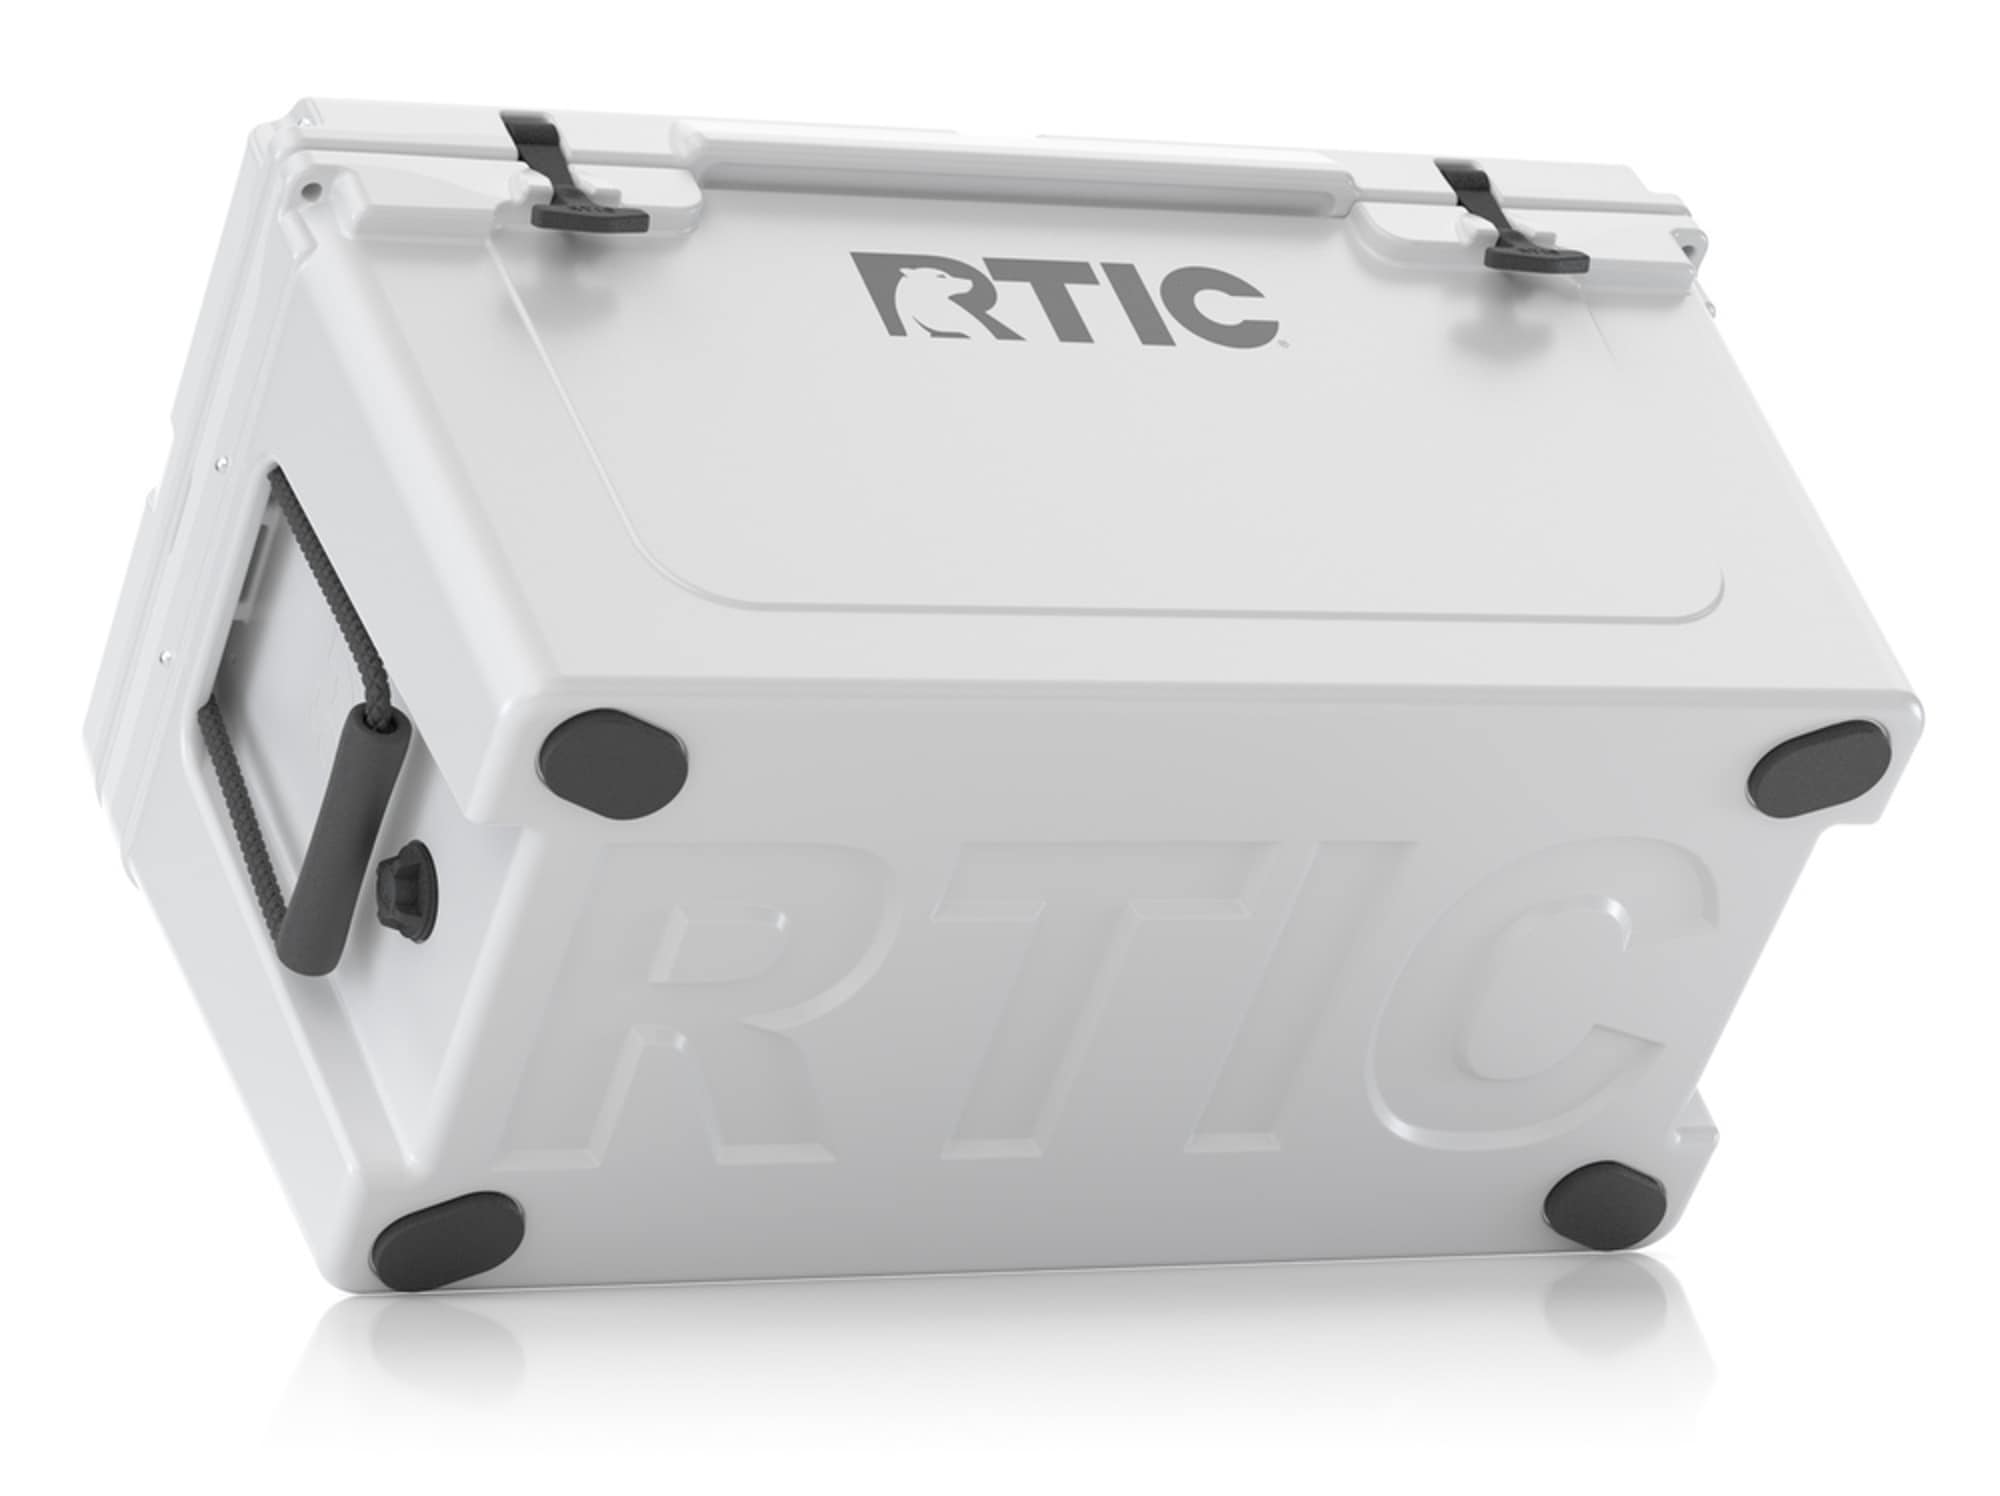 RTIC Cooler, 65 qt (White)